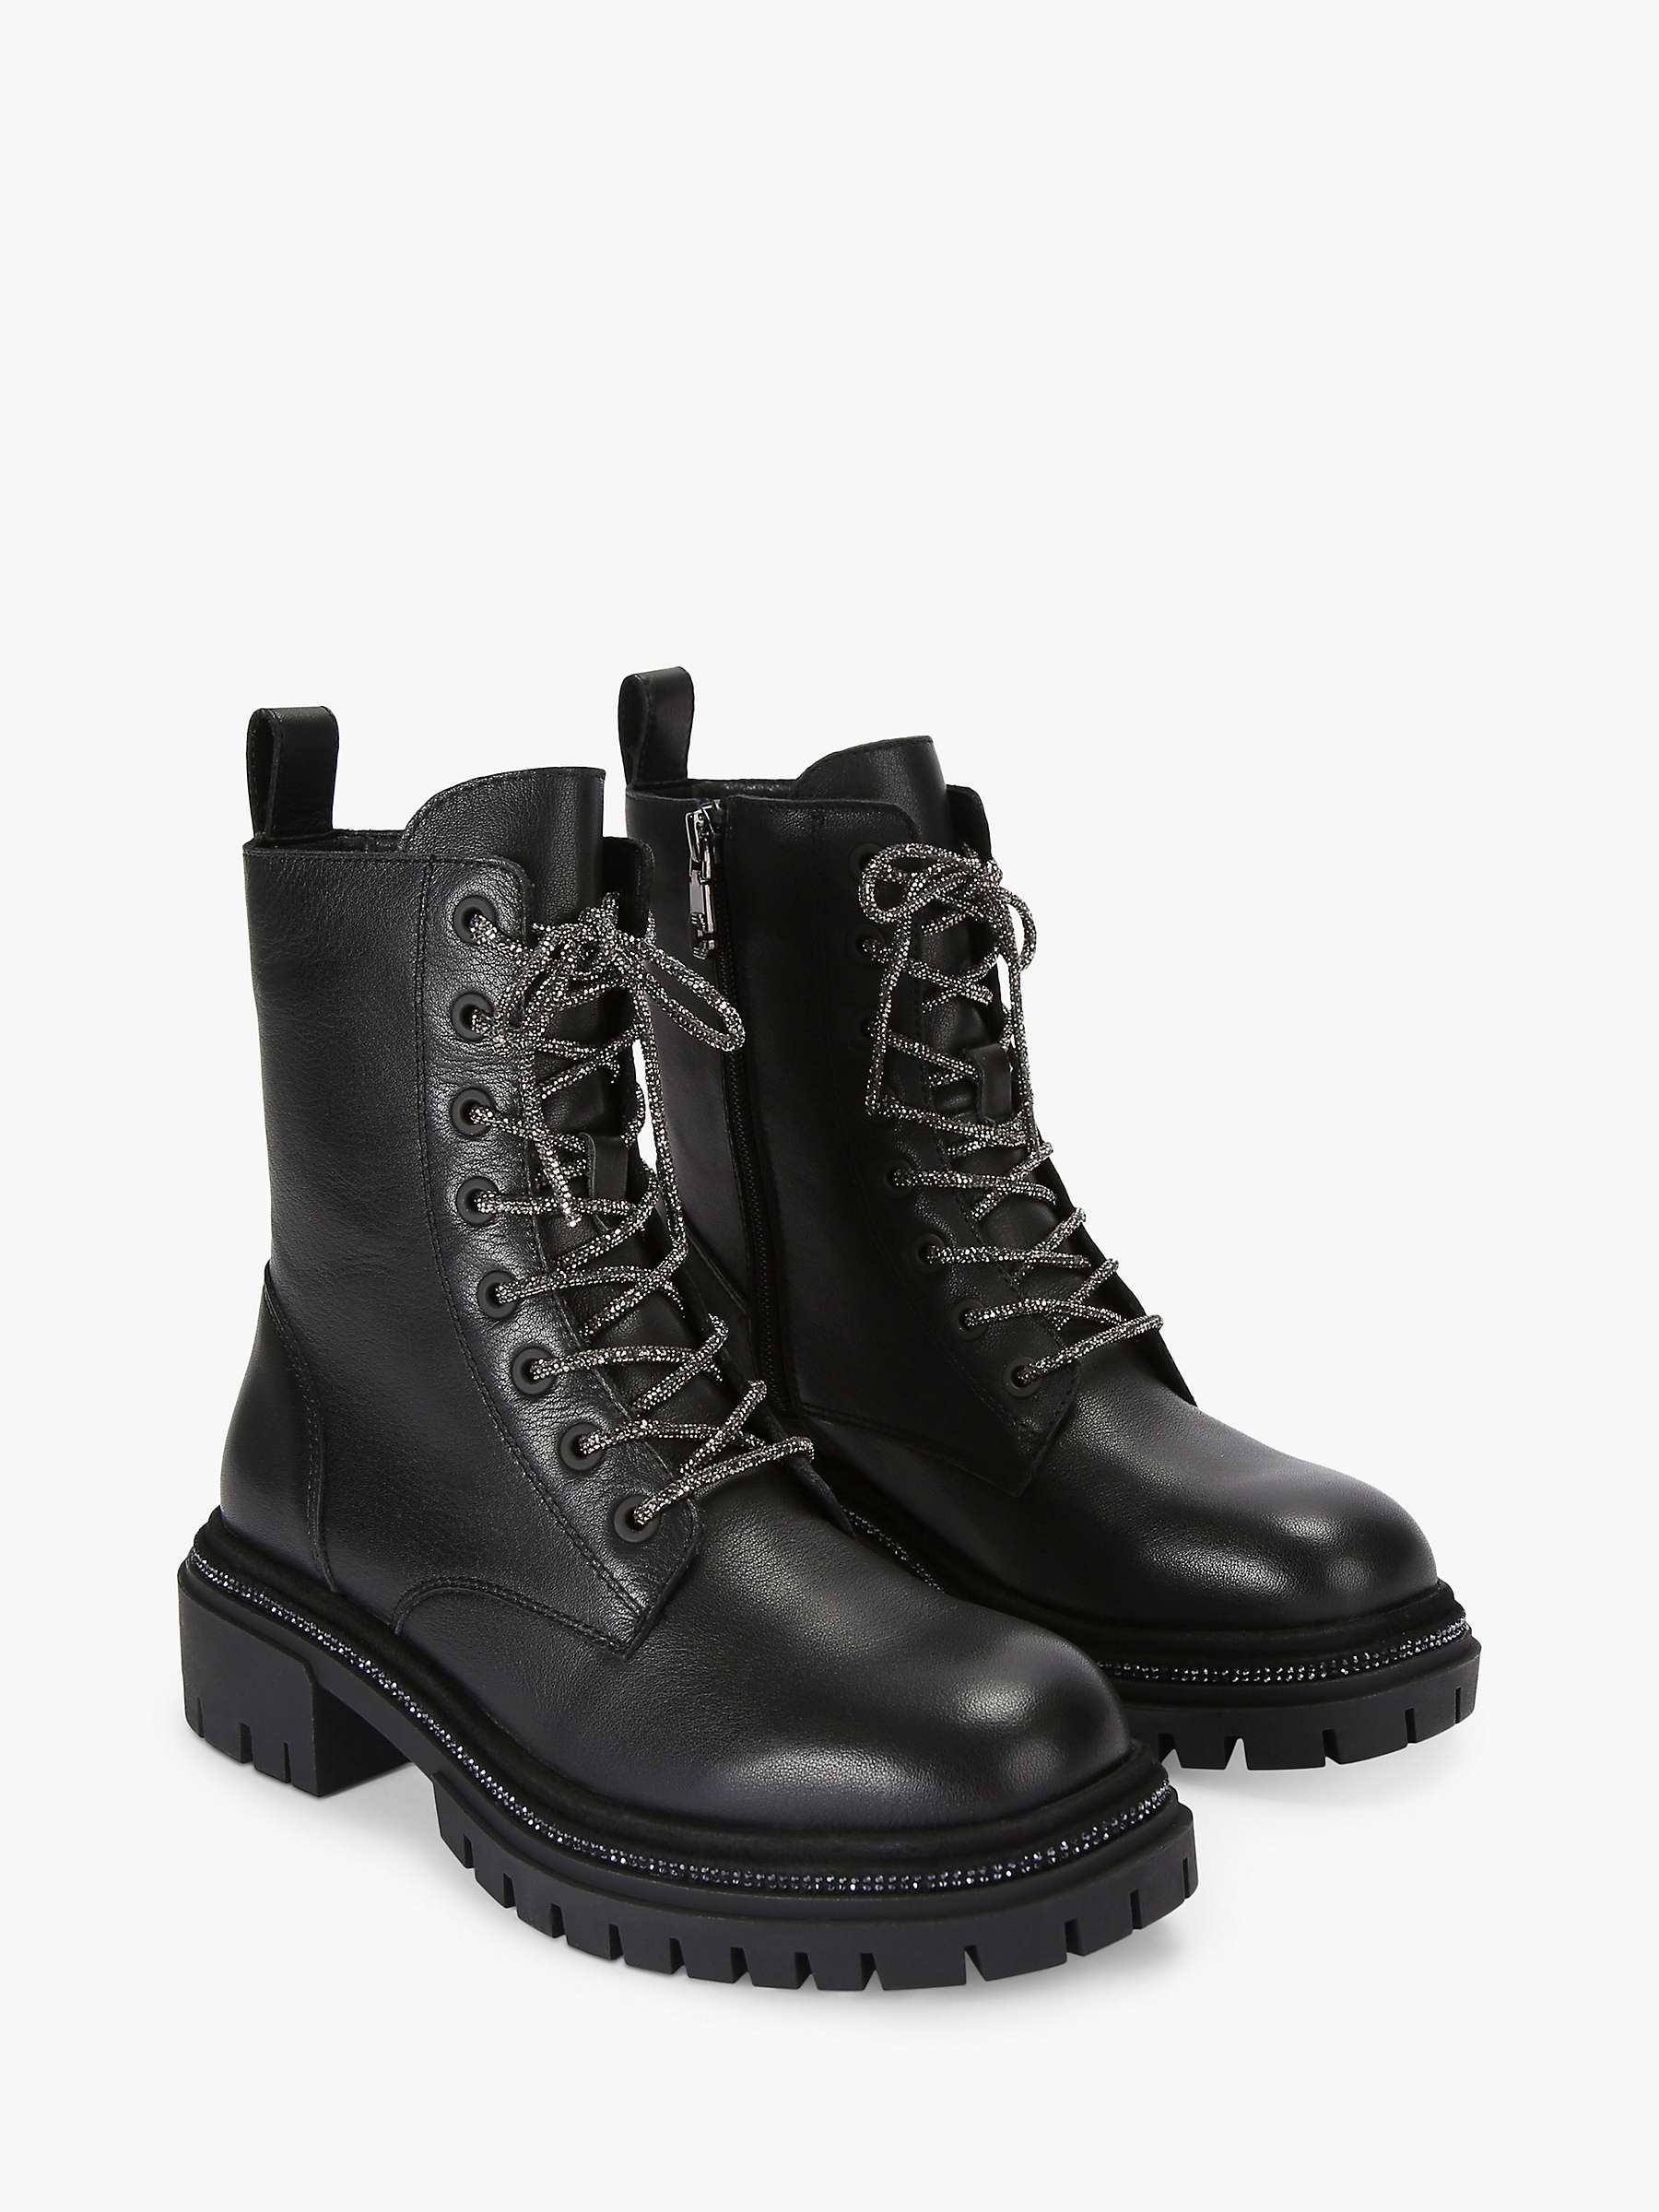 Buy Carvela Dazzle Leather Biker Boots, Black Online at johnlewis.com